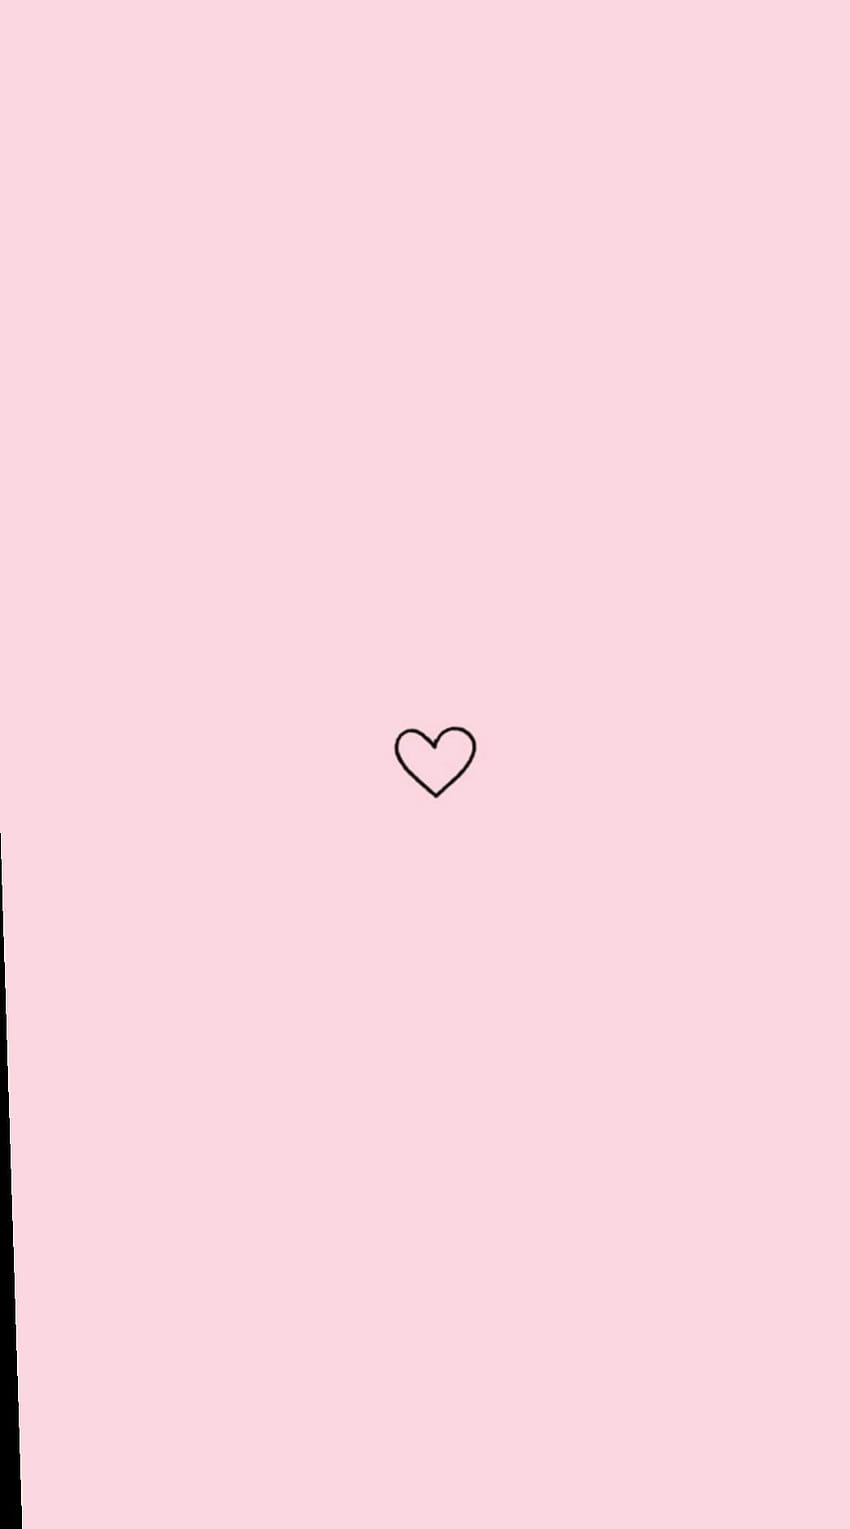 Hãy đến với hình nền hình trái tim màu hồng thật ấm áp và dễ thương này! Bạn sẽ yêu ngay từ cái nhìn đầu tiên với những trái tim đan xen nhau tạo thành một hình nền tuyệt đẹp. Hãy để trái tim của bạn tan chảy với sắc hồng ngọt ngào này!